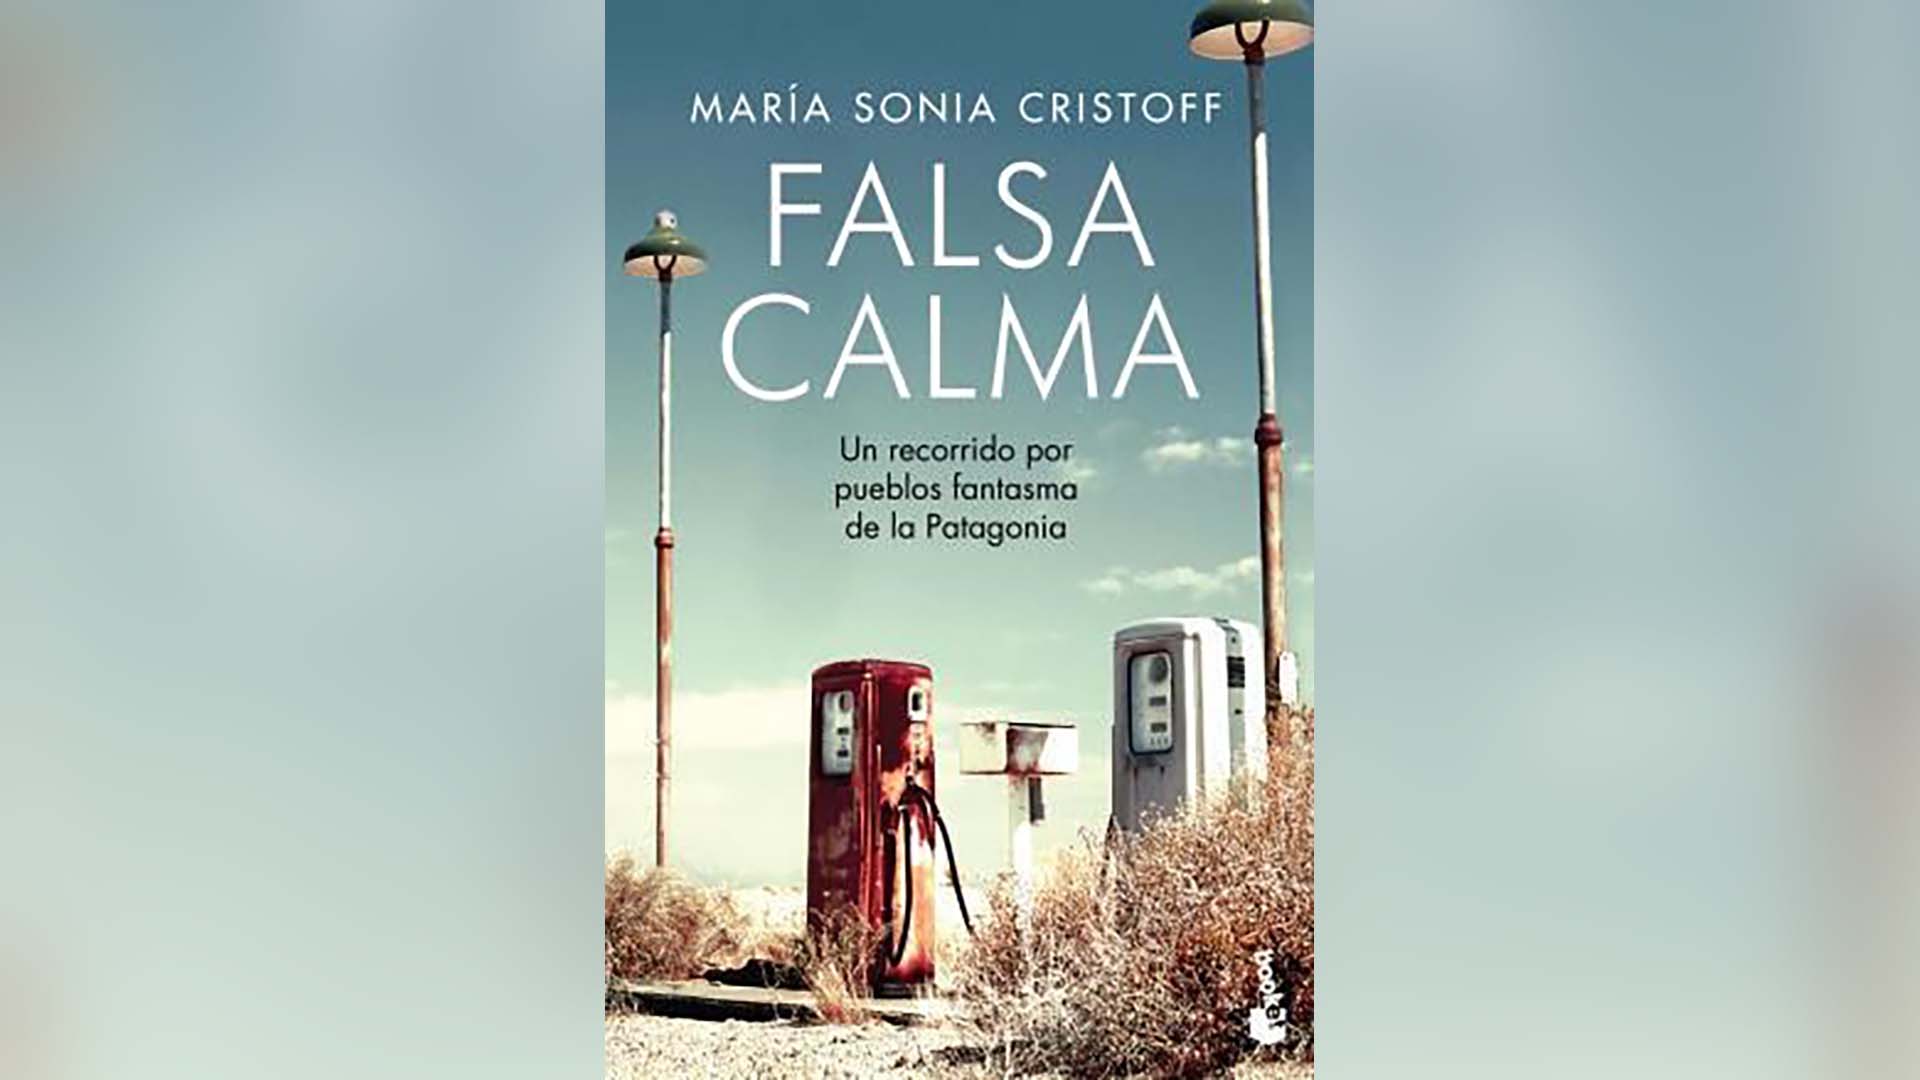 "Falsa calma", de María Sonia Cristoff, reeditado por el sello Booket